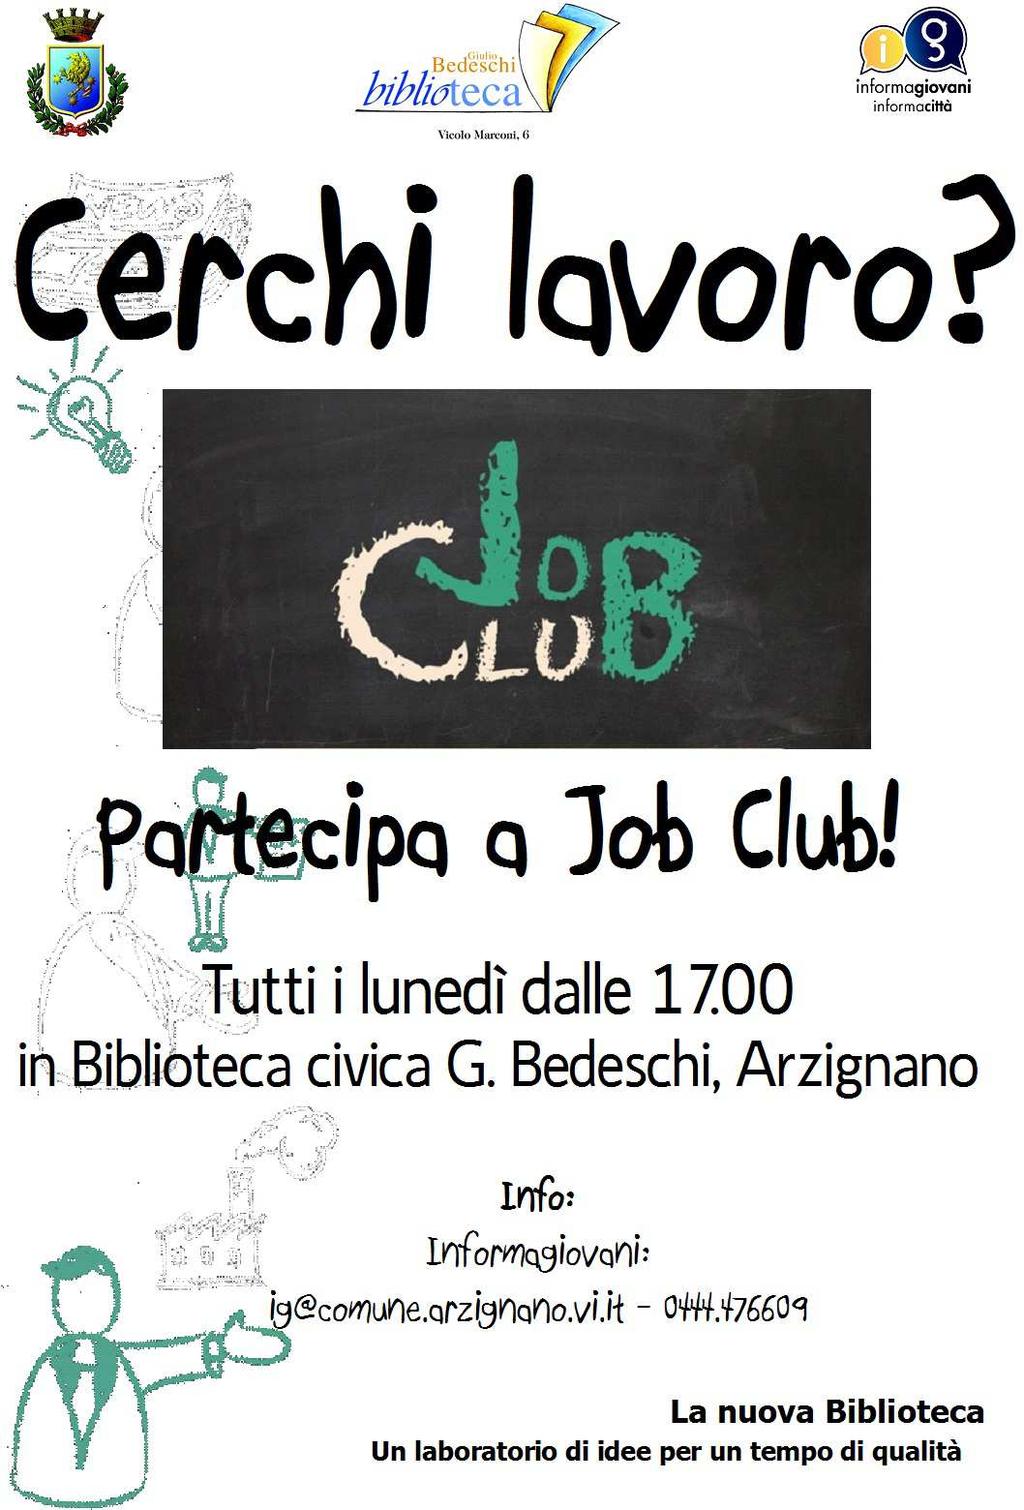 >>> JOB CLUB: La Biblioteca promuove Job Club, la soluzione informale e social per chi sta cercando lavoro. Info: Informagiovani 0444.476609, dal lunedì al venerdì dalle 17.00 